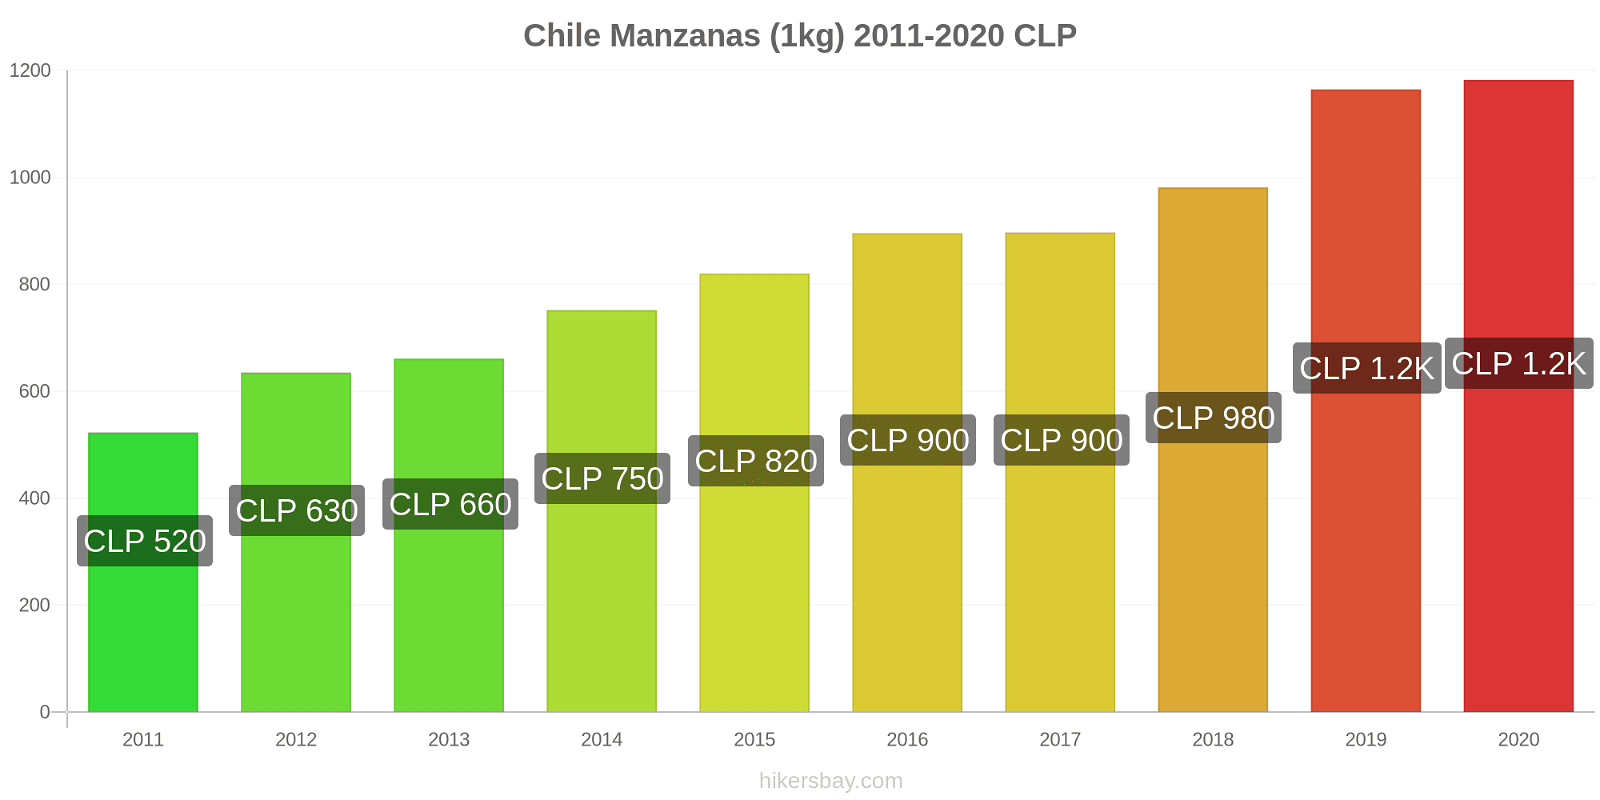 Chile cambios de precios Manzanas (1kg) hikersbay.com